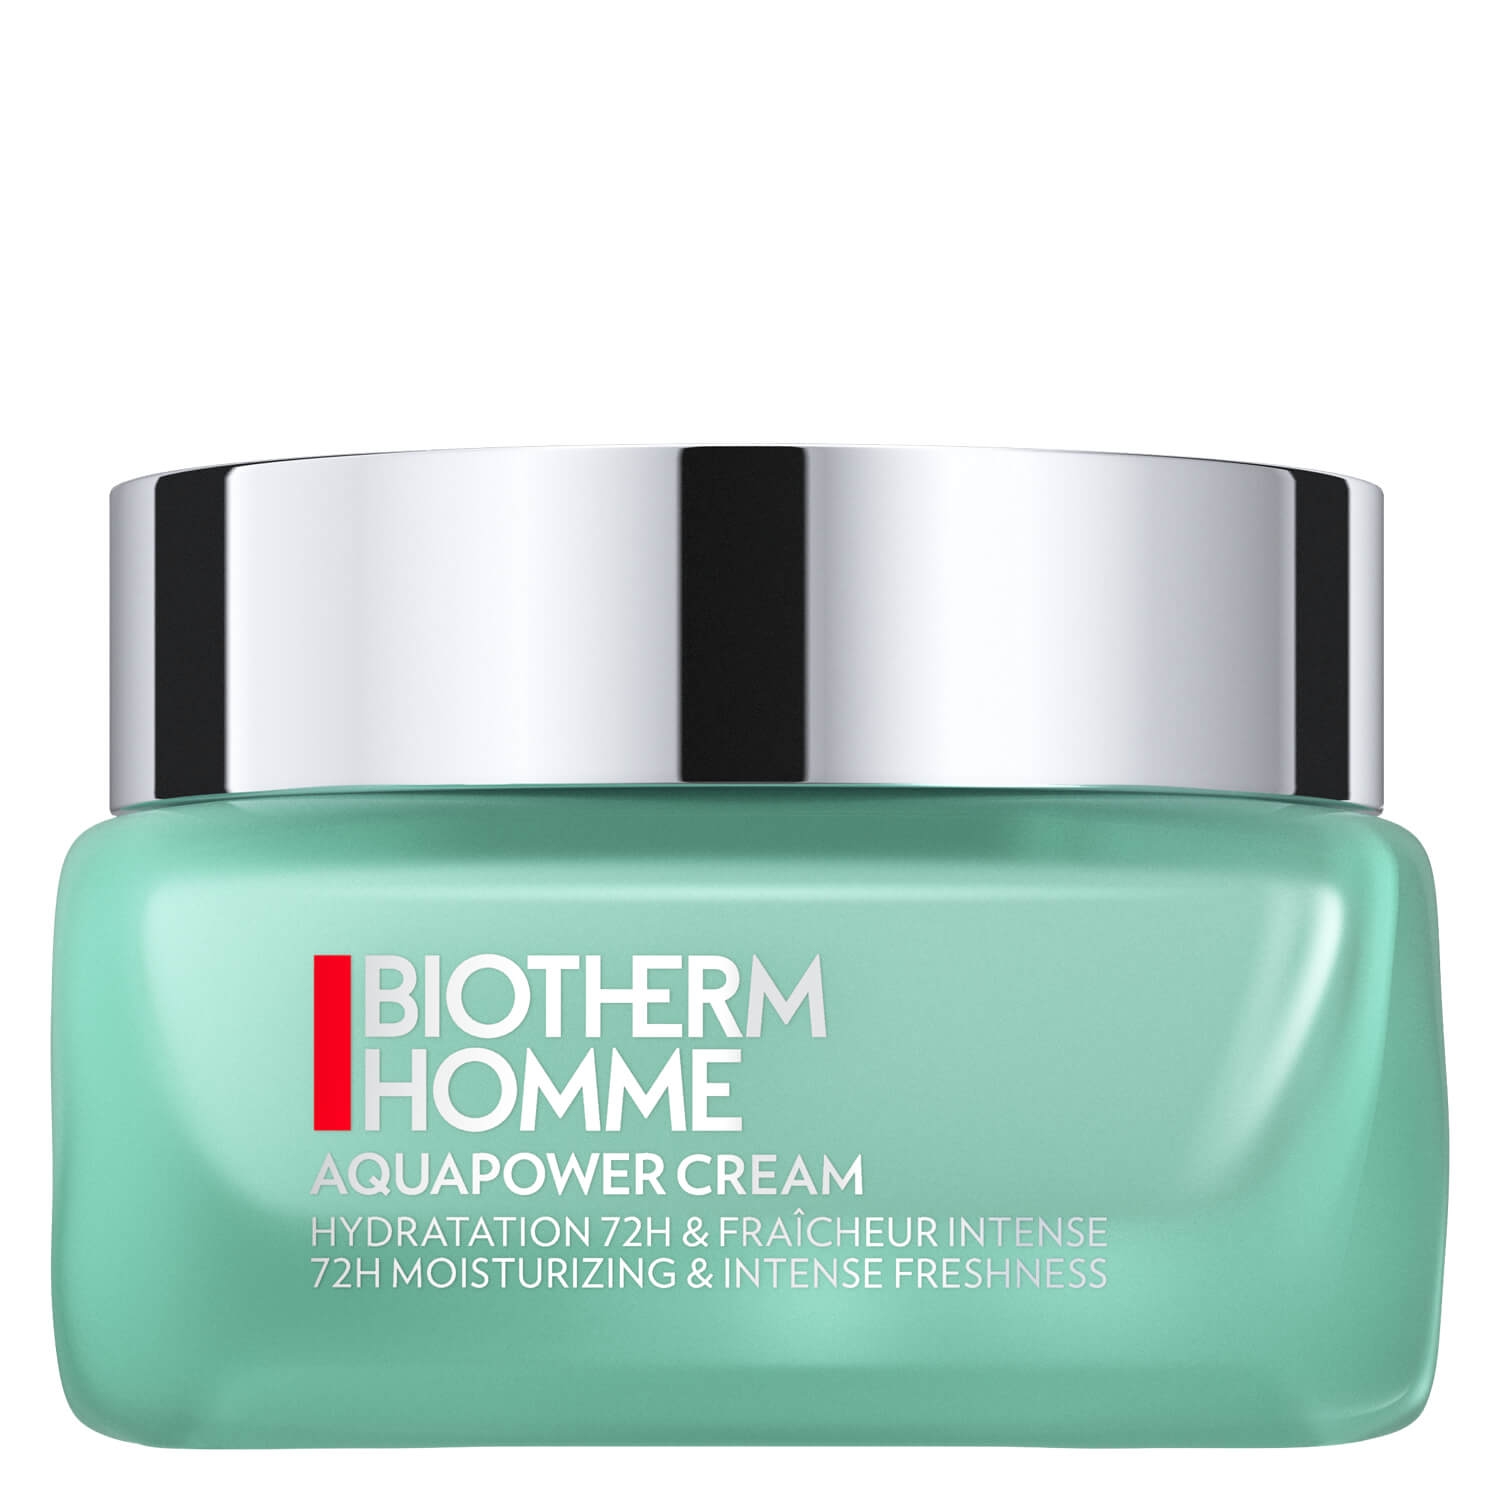 Produktbild von Biotherm Homme - Aquapower Cream Hydrator 72H